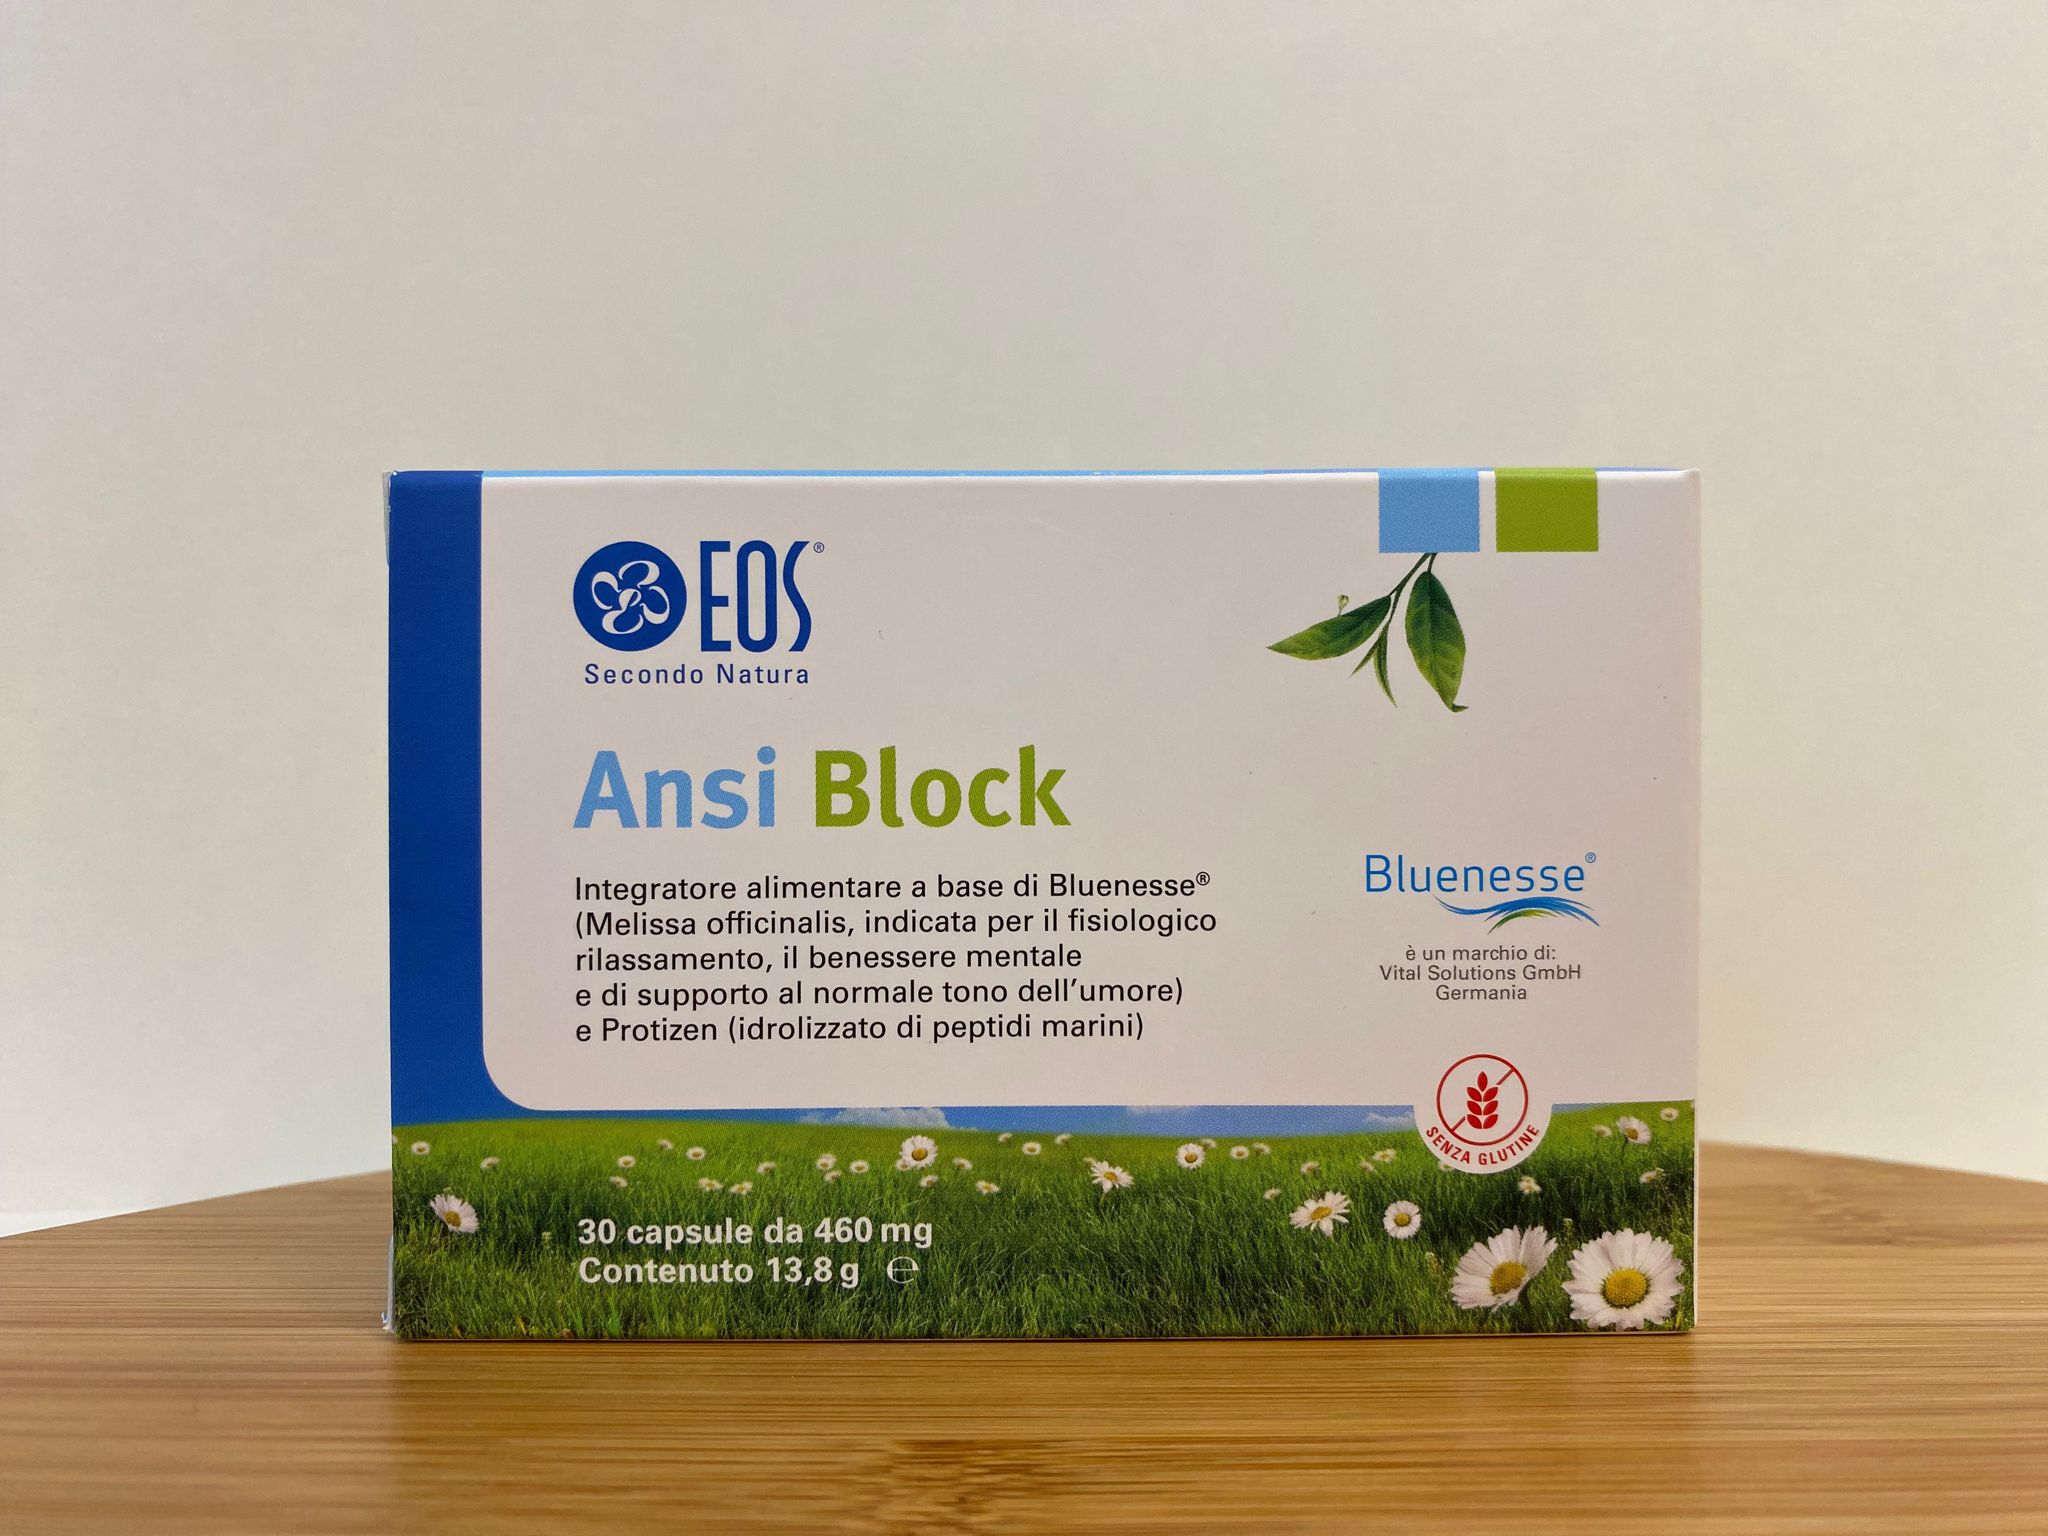 EOS: Ansi Block